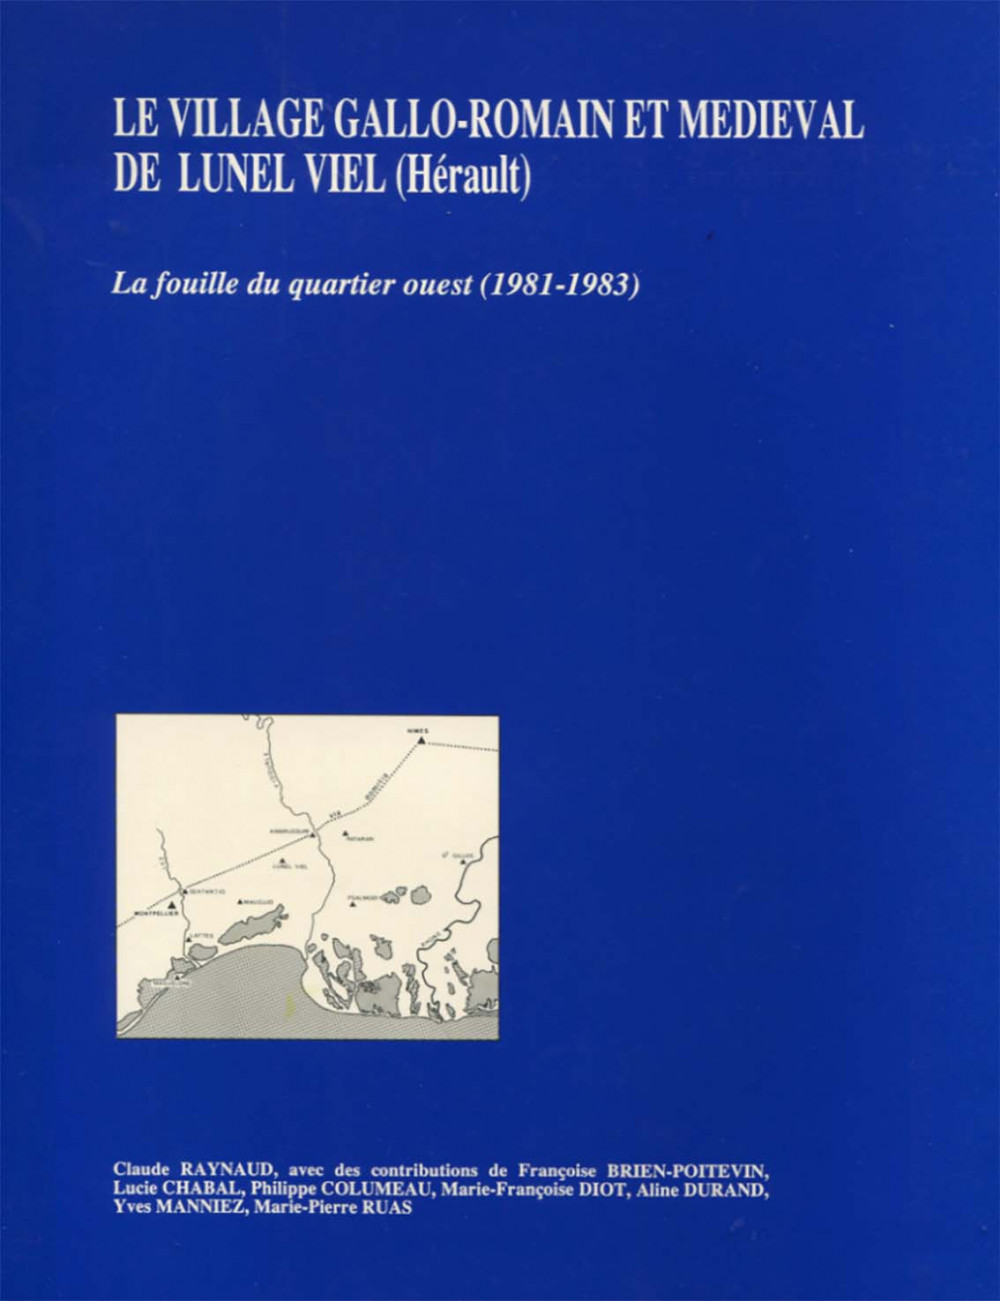 Le village gallo-romain et médiéval de Lunel Viel (Hérault). La fouille du quartier ouest (1981-1983)